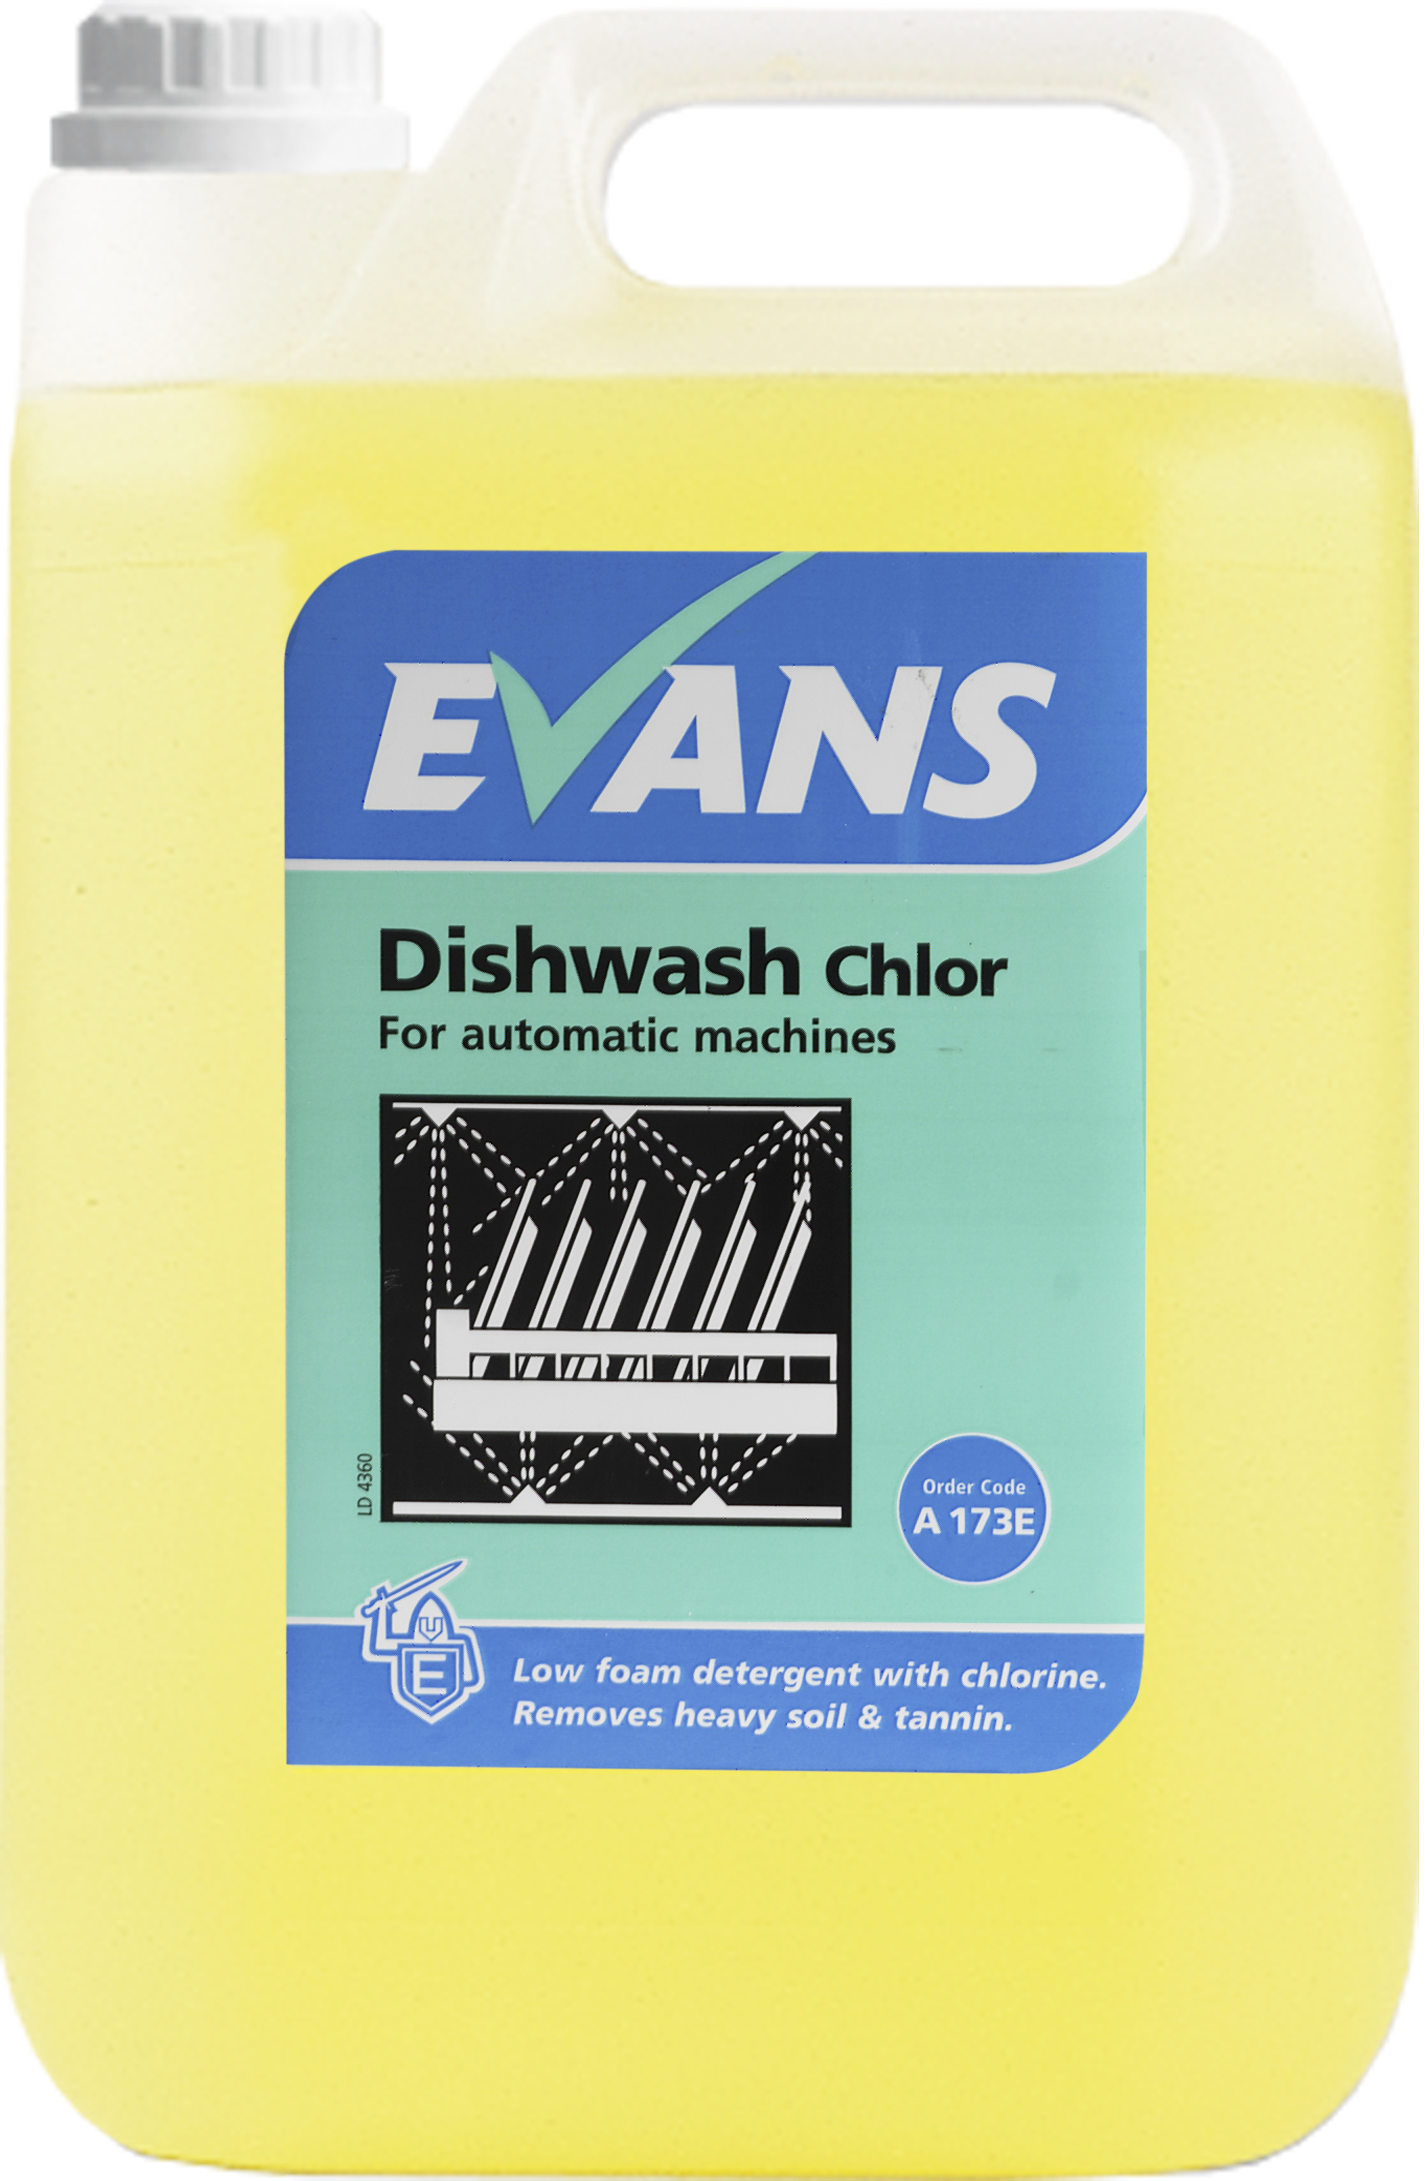 Evans Dishwash Chlor - Chlorinated Detergent 5 Ltr